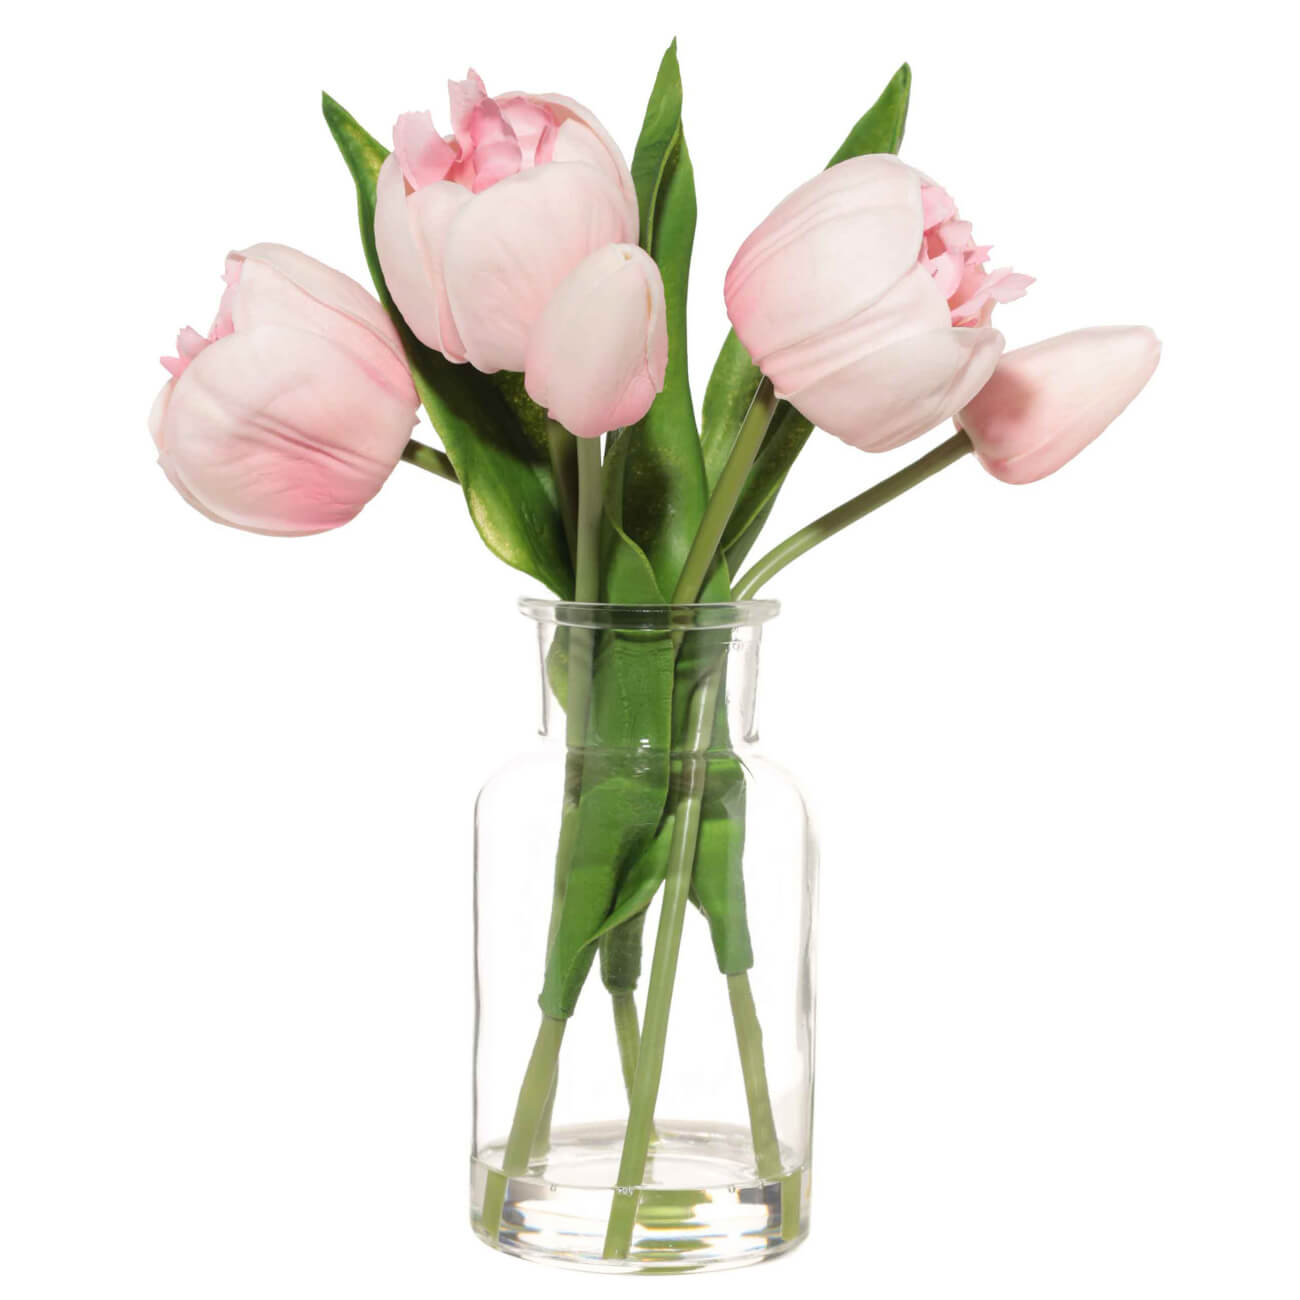 Букет искусственный, 21 см, в вазе, полиуретан/стекло, Розовые тюльпаны, Tulip garden букет королевский роман